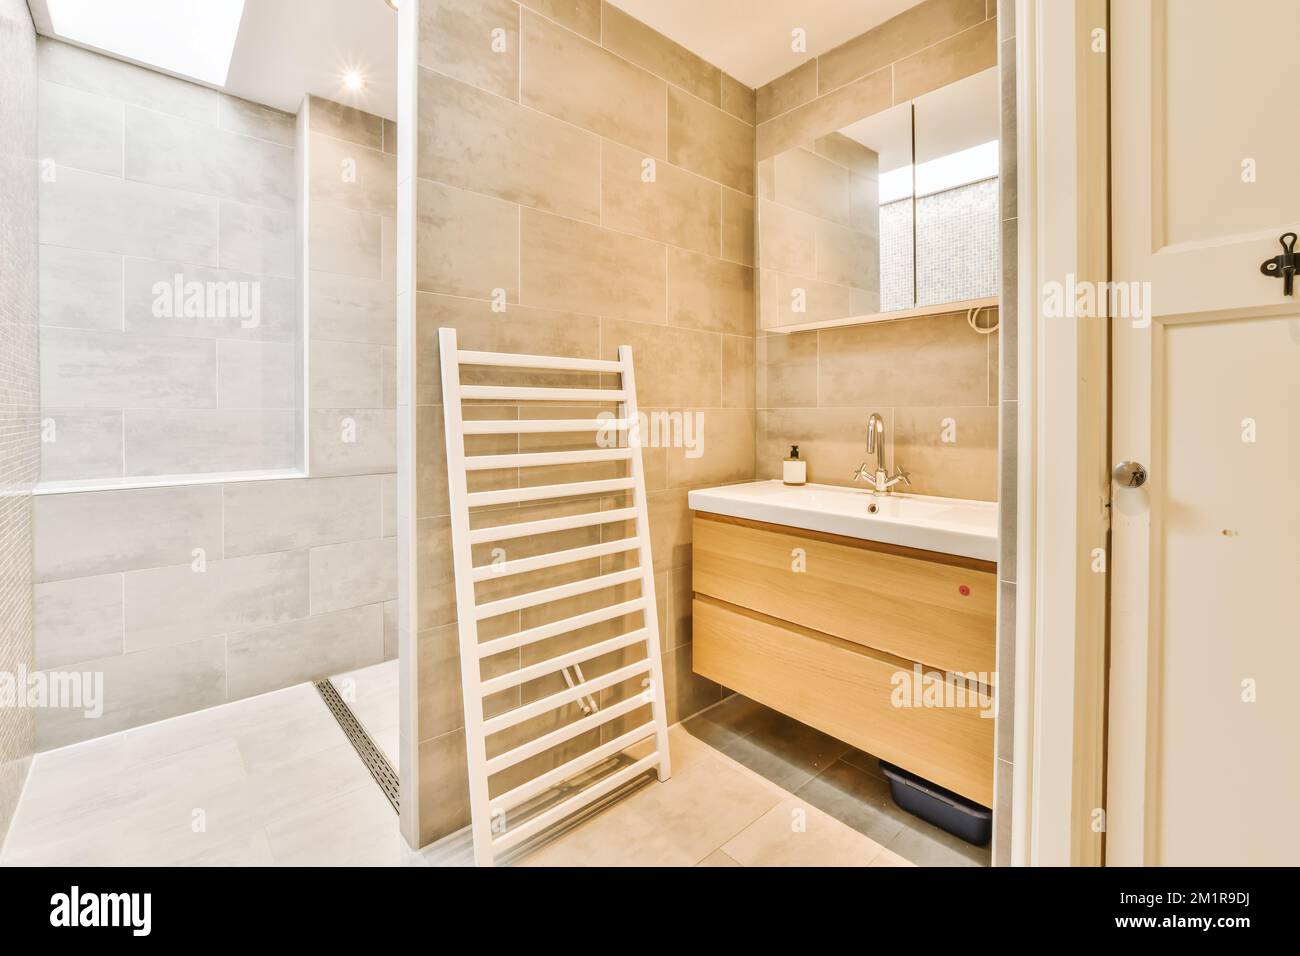 Ein modernes Badezimmer mit beigefliesten Wänden und weißen Fliesen an der Wand, es gibt einen Handtuchhalter neben dem Waschbecken Stockfoto